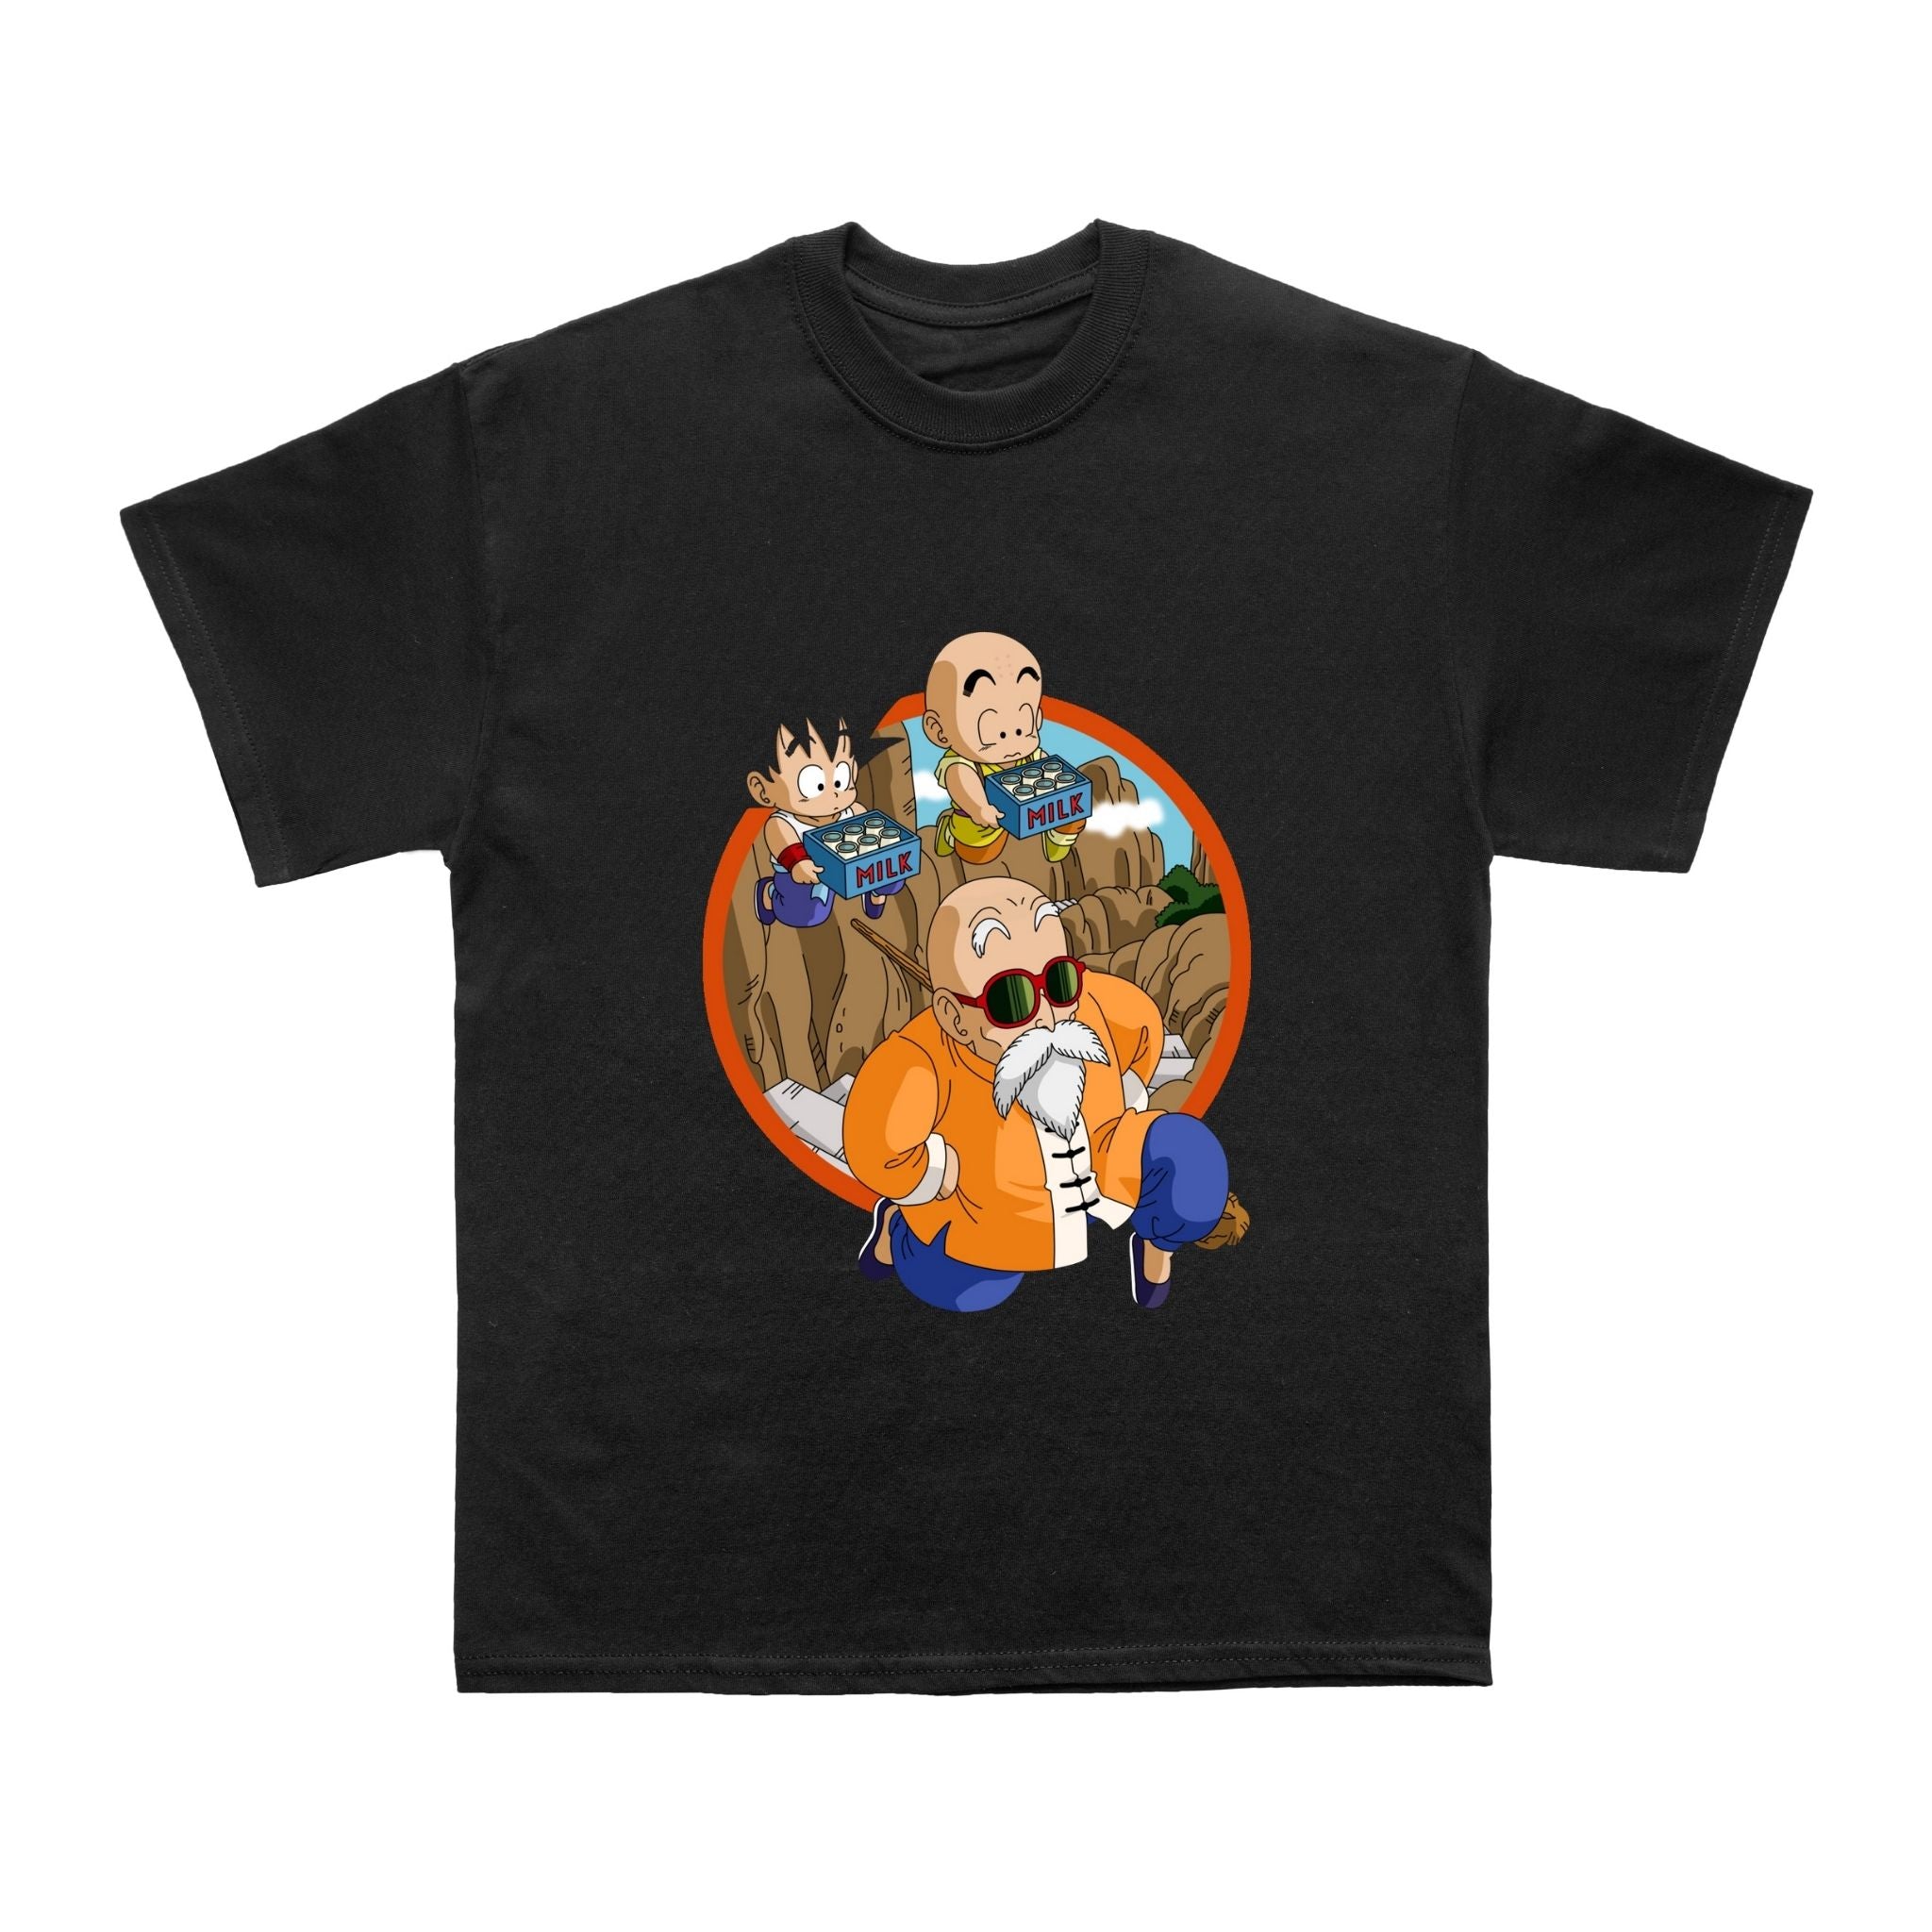 Anime Inspired T shirt